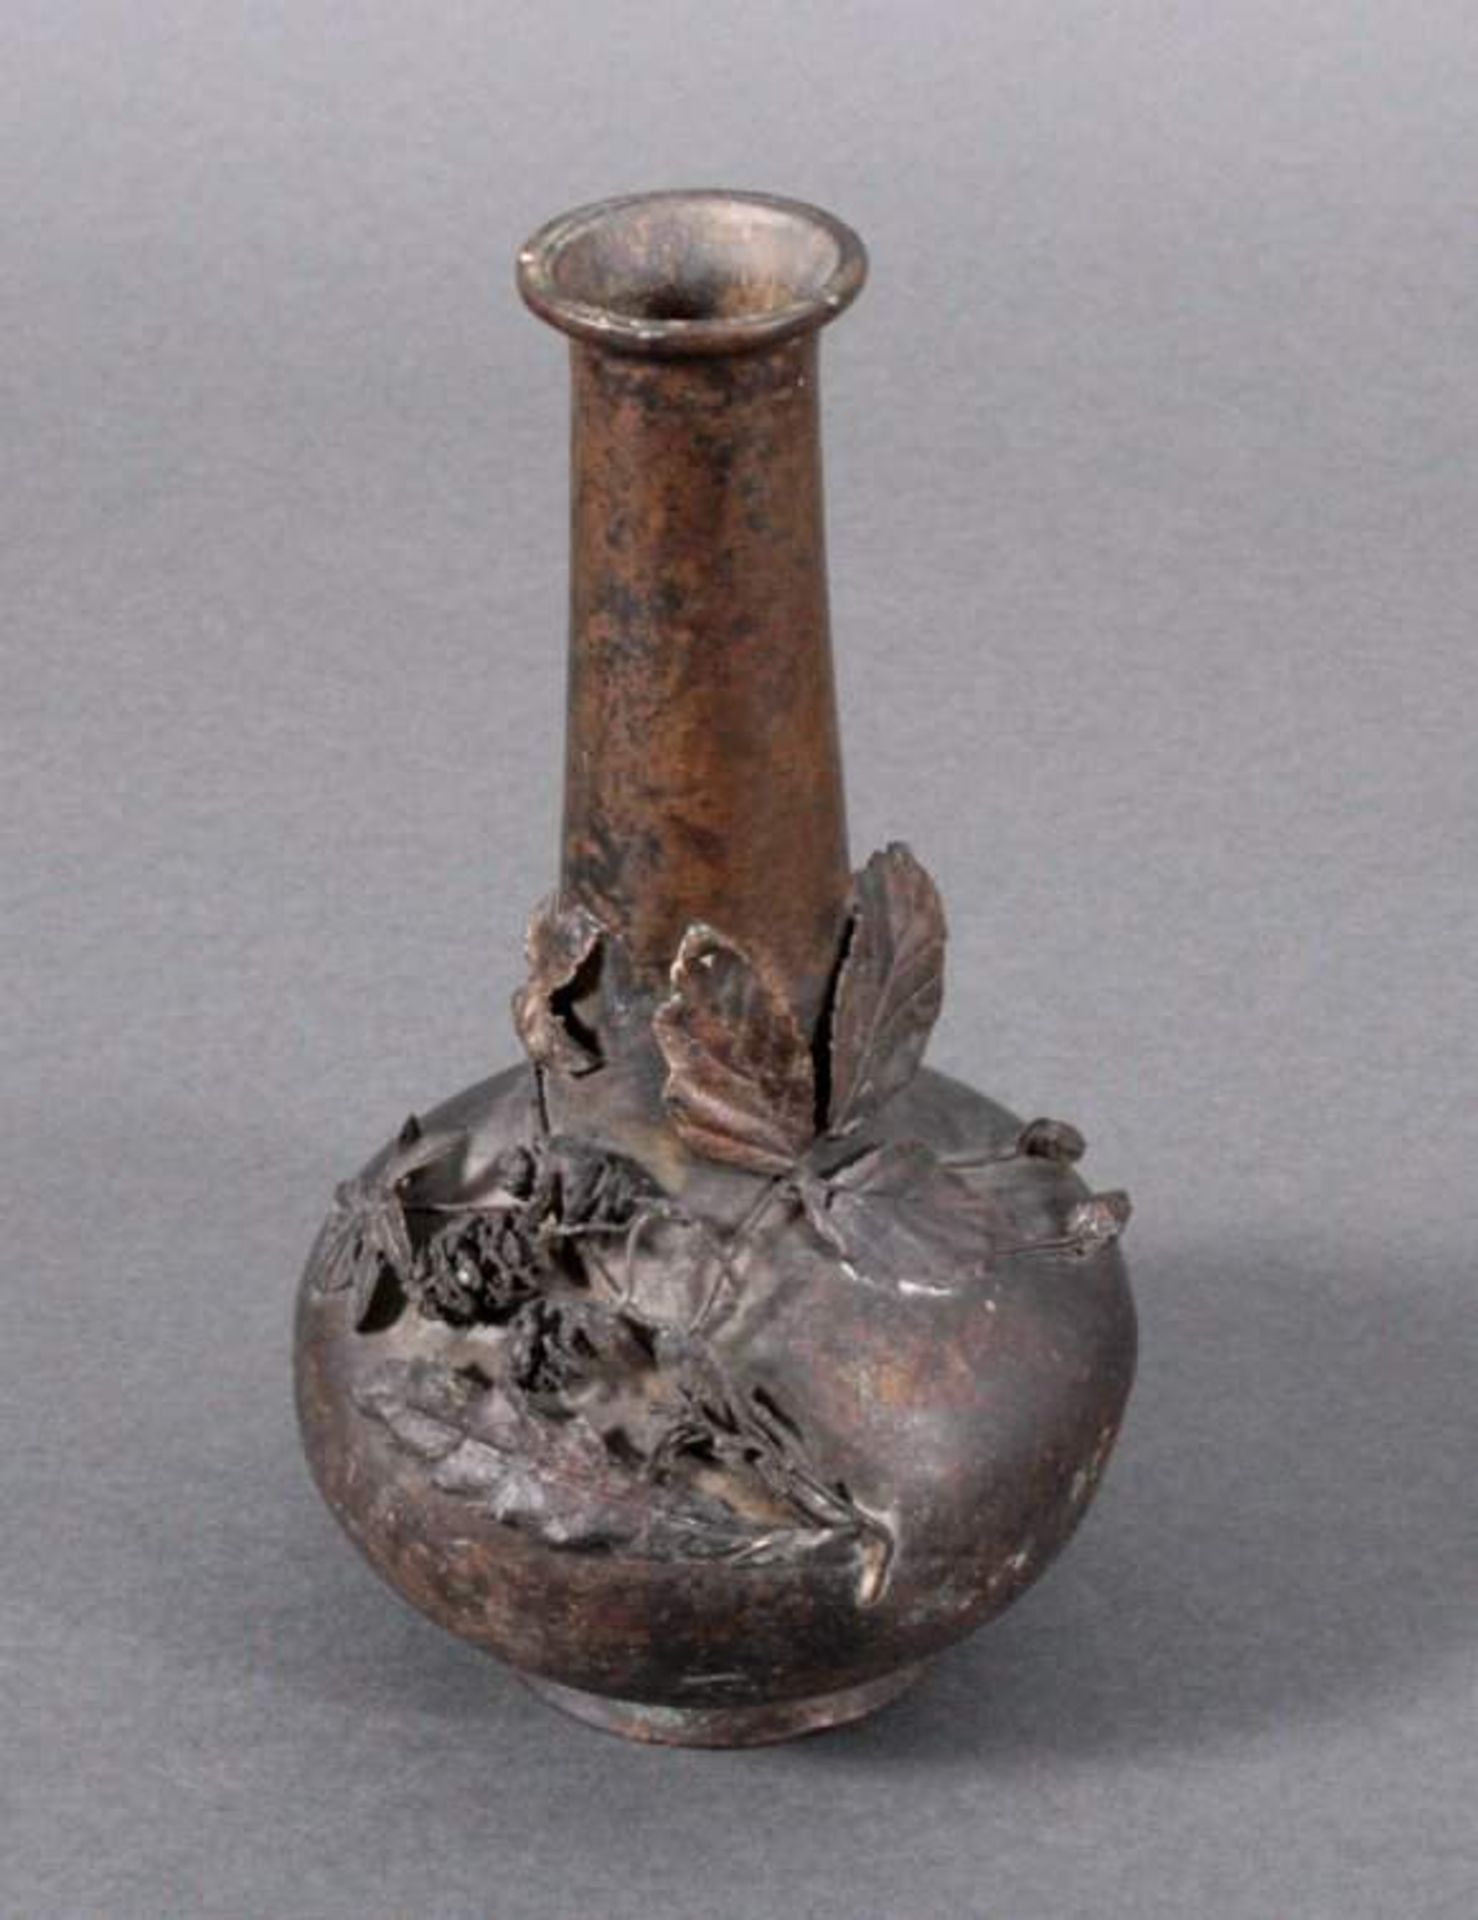 Bronze-Vase, ChinaGebauchte Form mit langem Hals und verzierter Wandung vonrelifierten Blättern